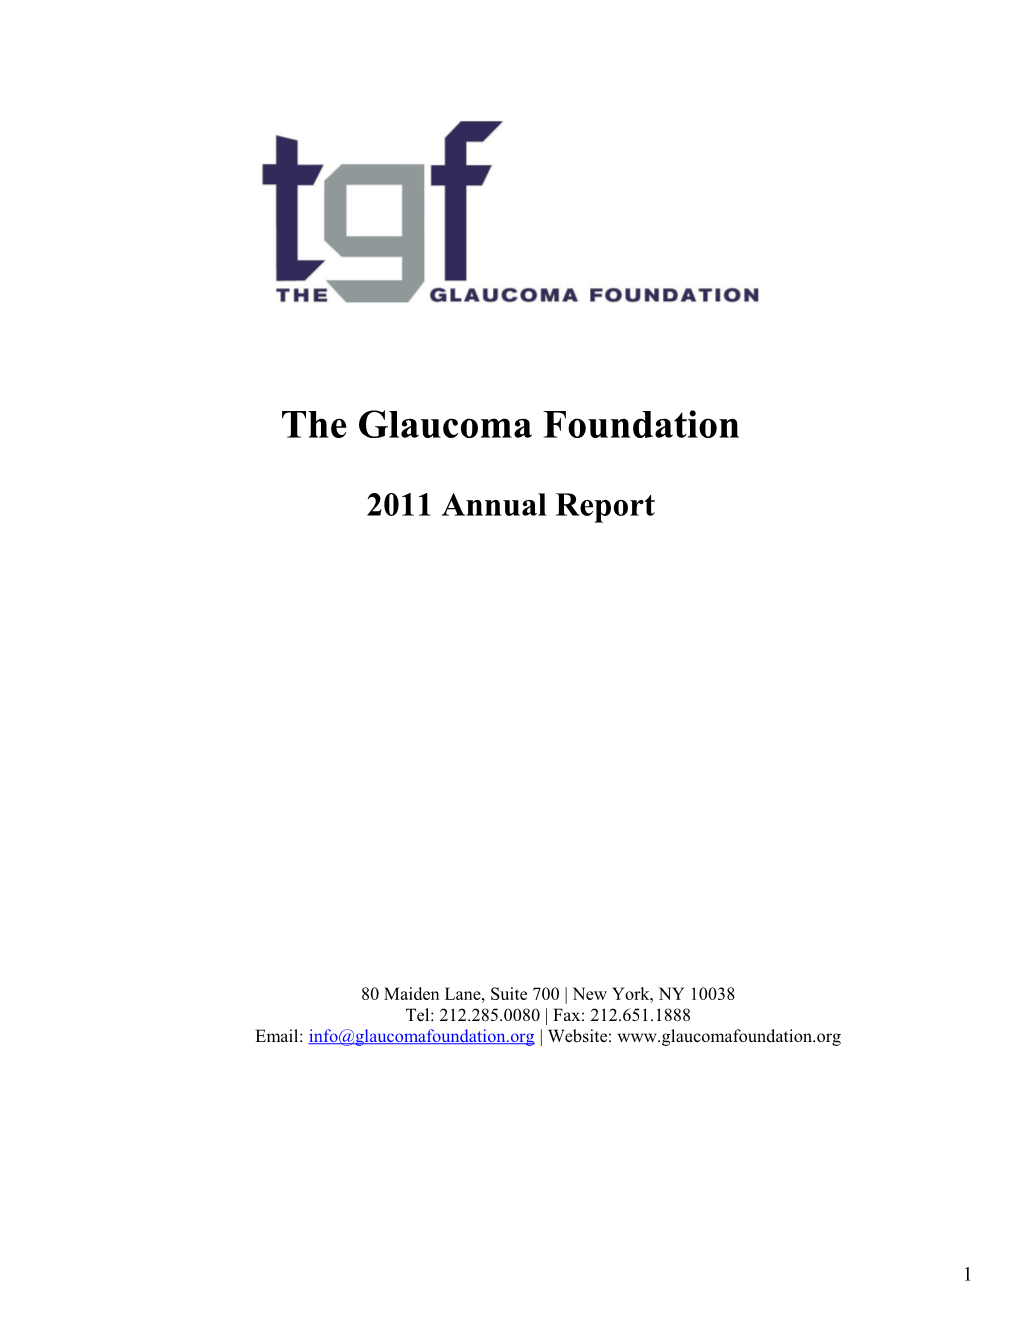 The Glaucoma Foundation, Inc